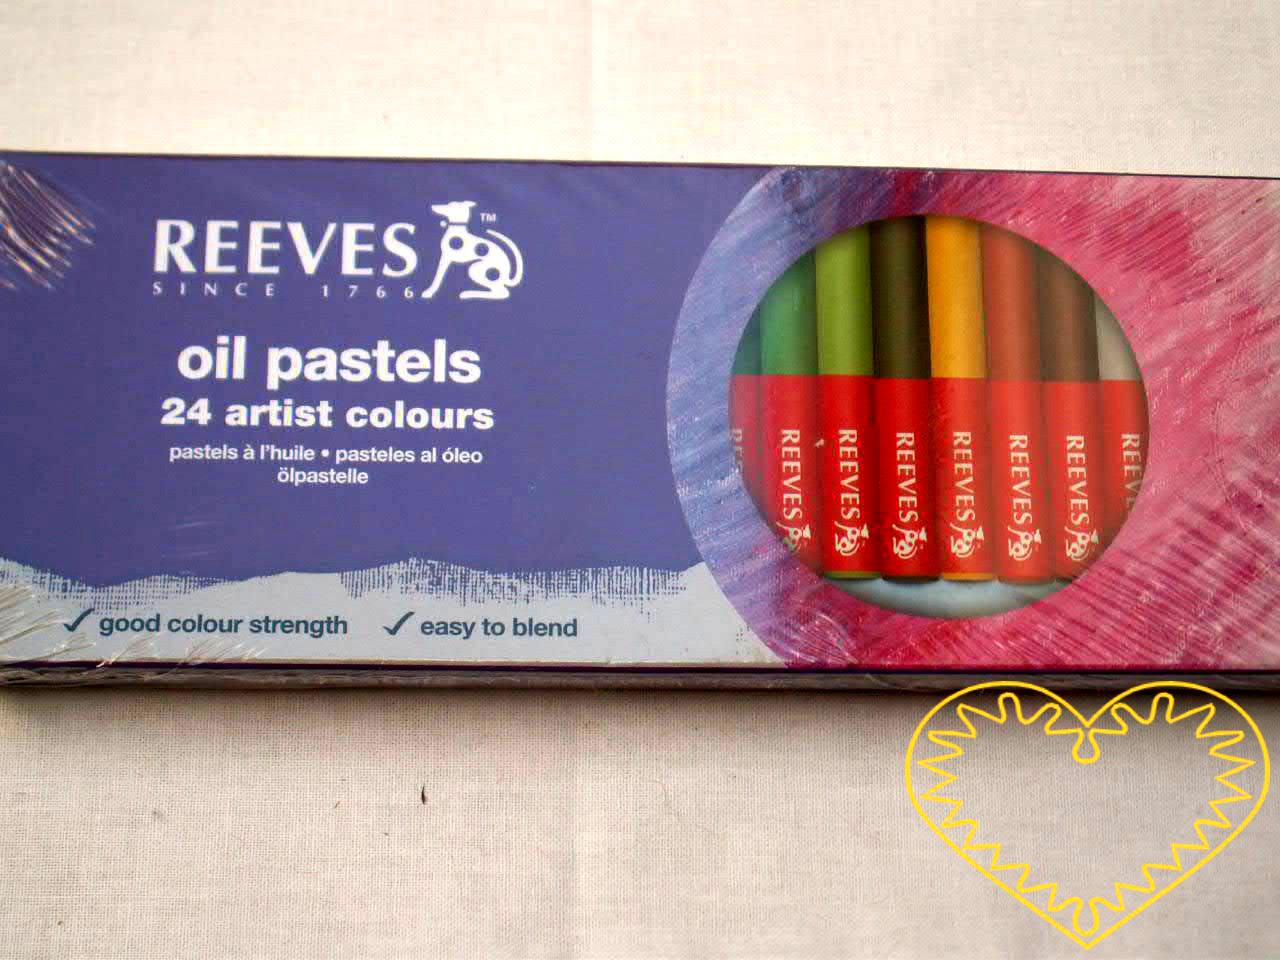 Olejové pastely - 24 kusů, značka Reeves. Velikost jednotlivých pastelů je 70 x 8 mm. Olejové pastely obsahují kromě pigmentu i vosky a tuk a svými vlastnostmi připomínají voskovky. Nanášení velké vrstvy a překrývání odstínů umožňuje vzájemné míchání